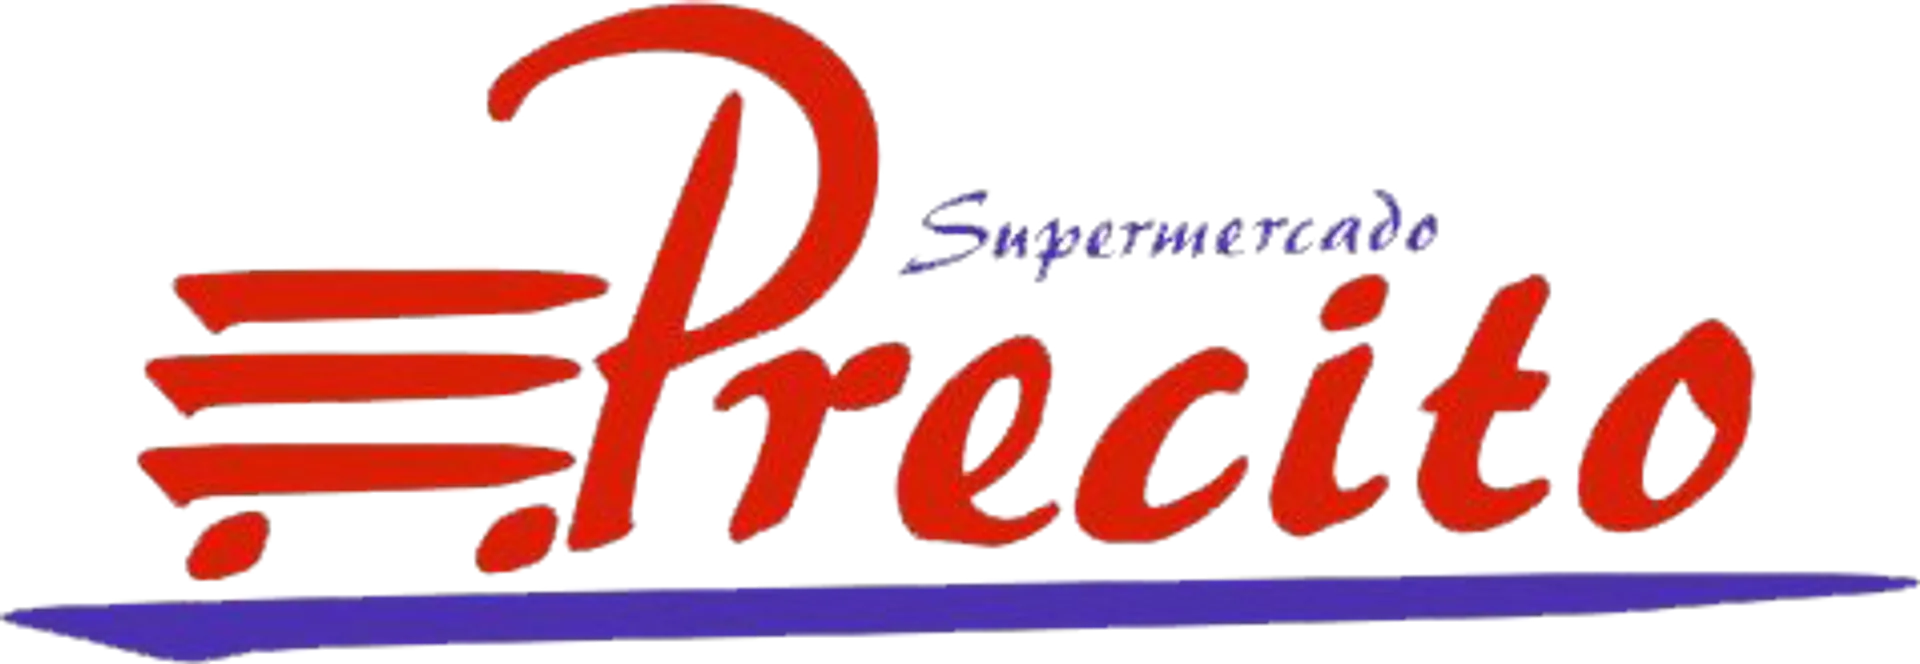 SUPERMERDADO PRECIT0 logo